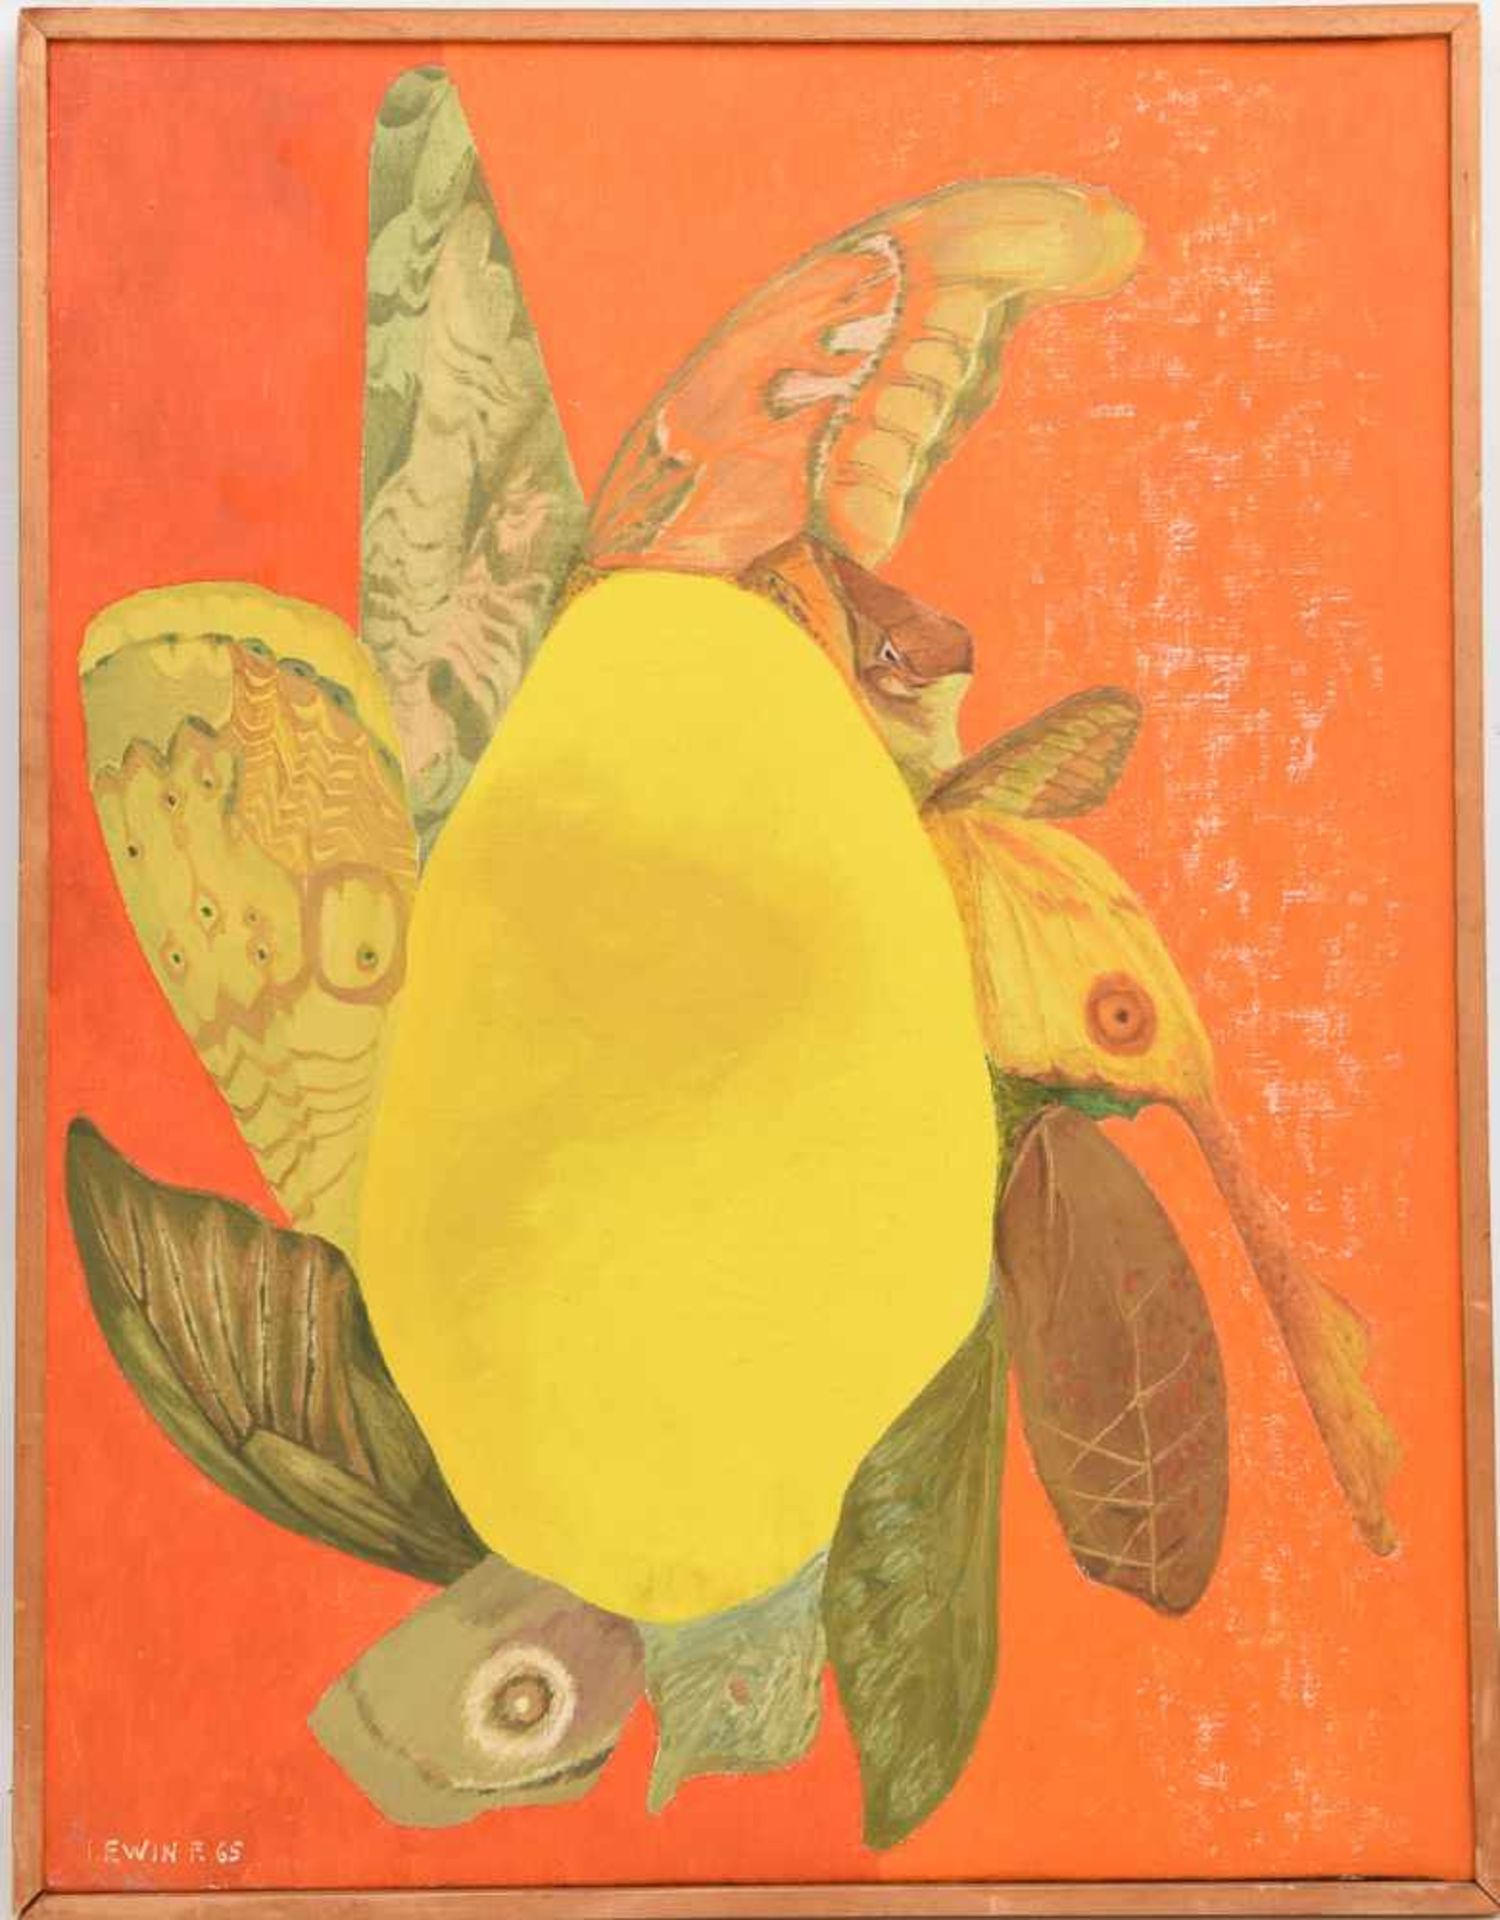 FELIX LEWIN, "Abstrakte Komposition in gelb und orange" Öl auf Leinwand, 1965, gerahmt. Unten